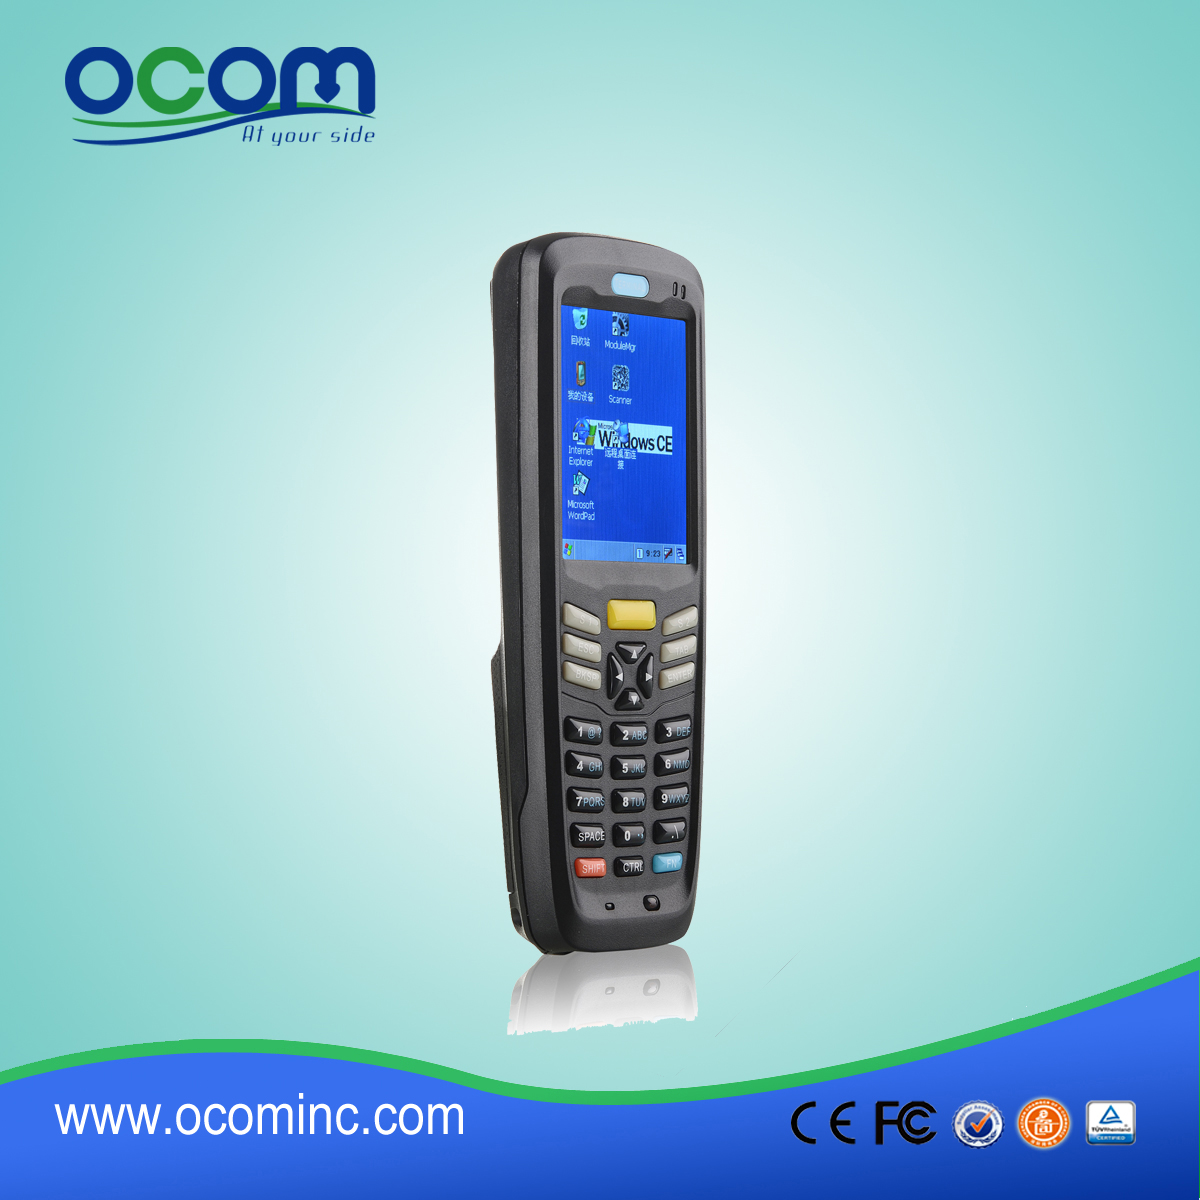 Basso costo e portatile di raccolta dati-OCB-D6000